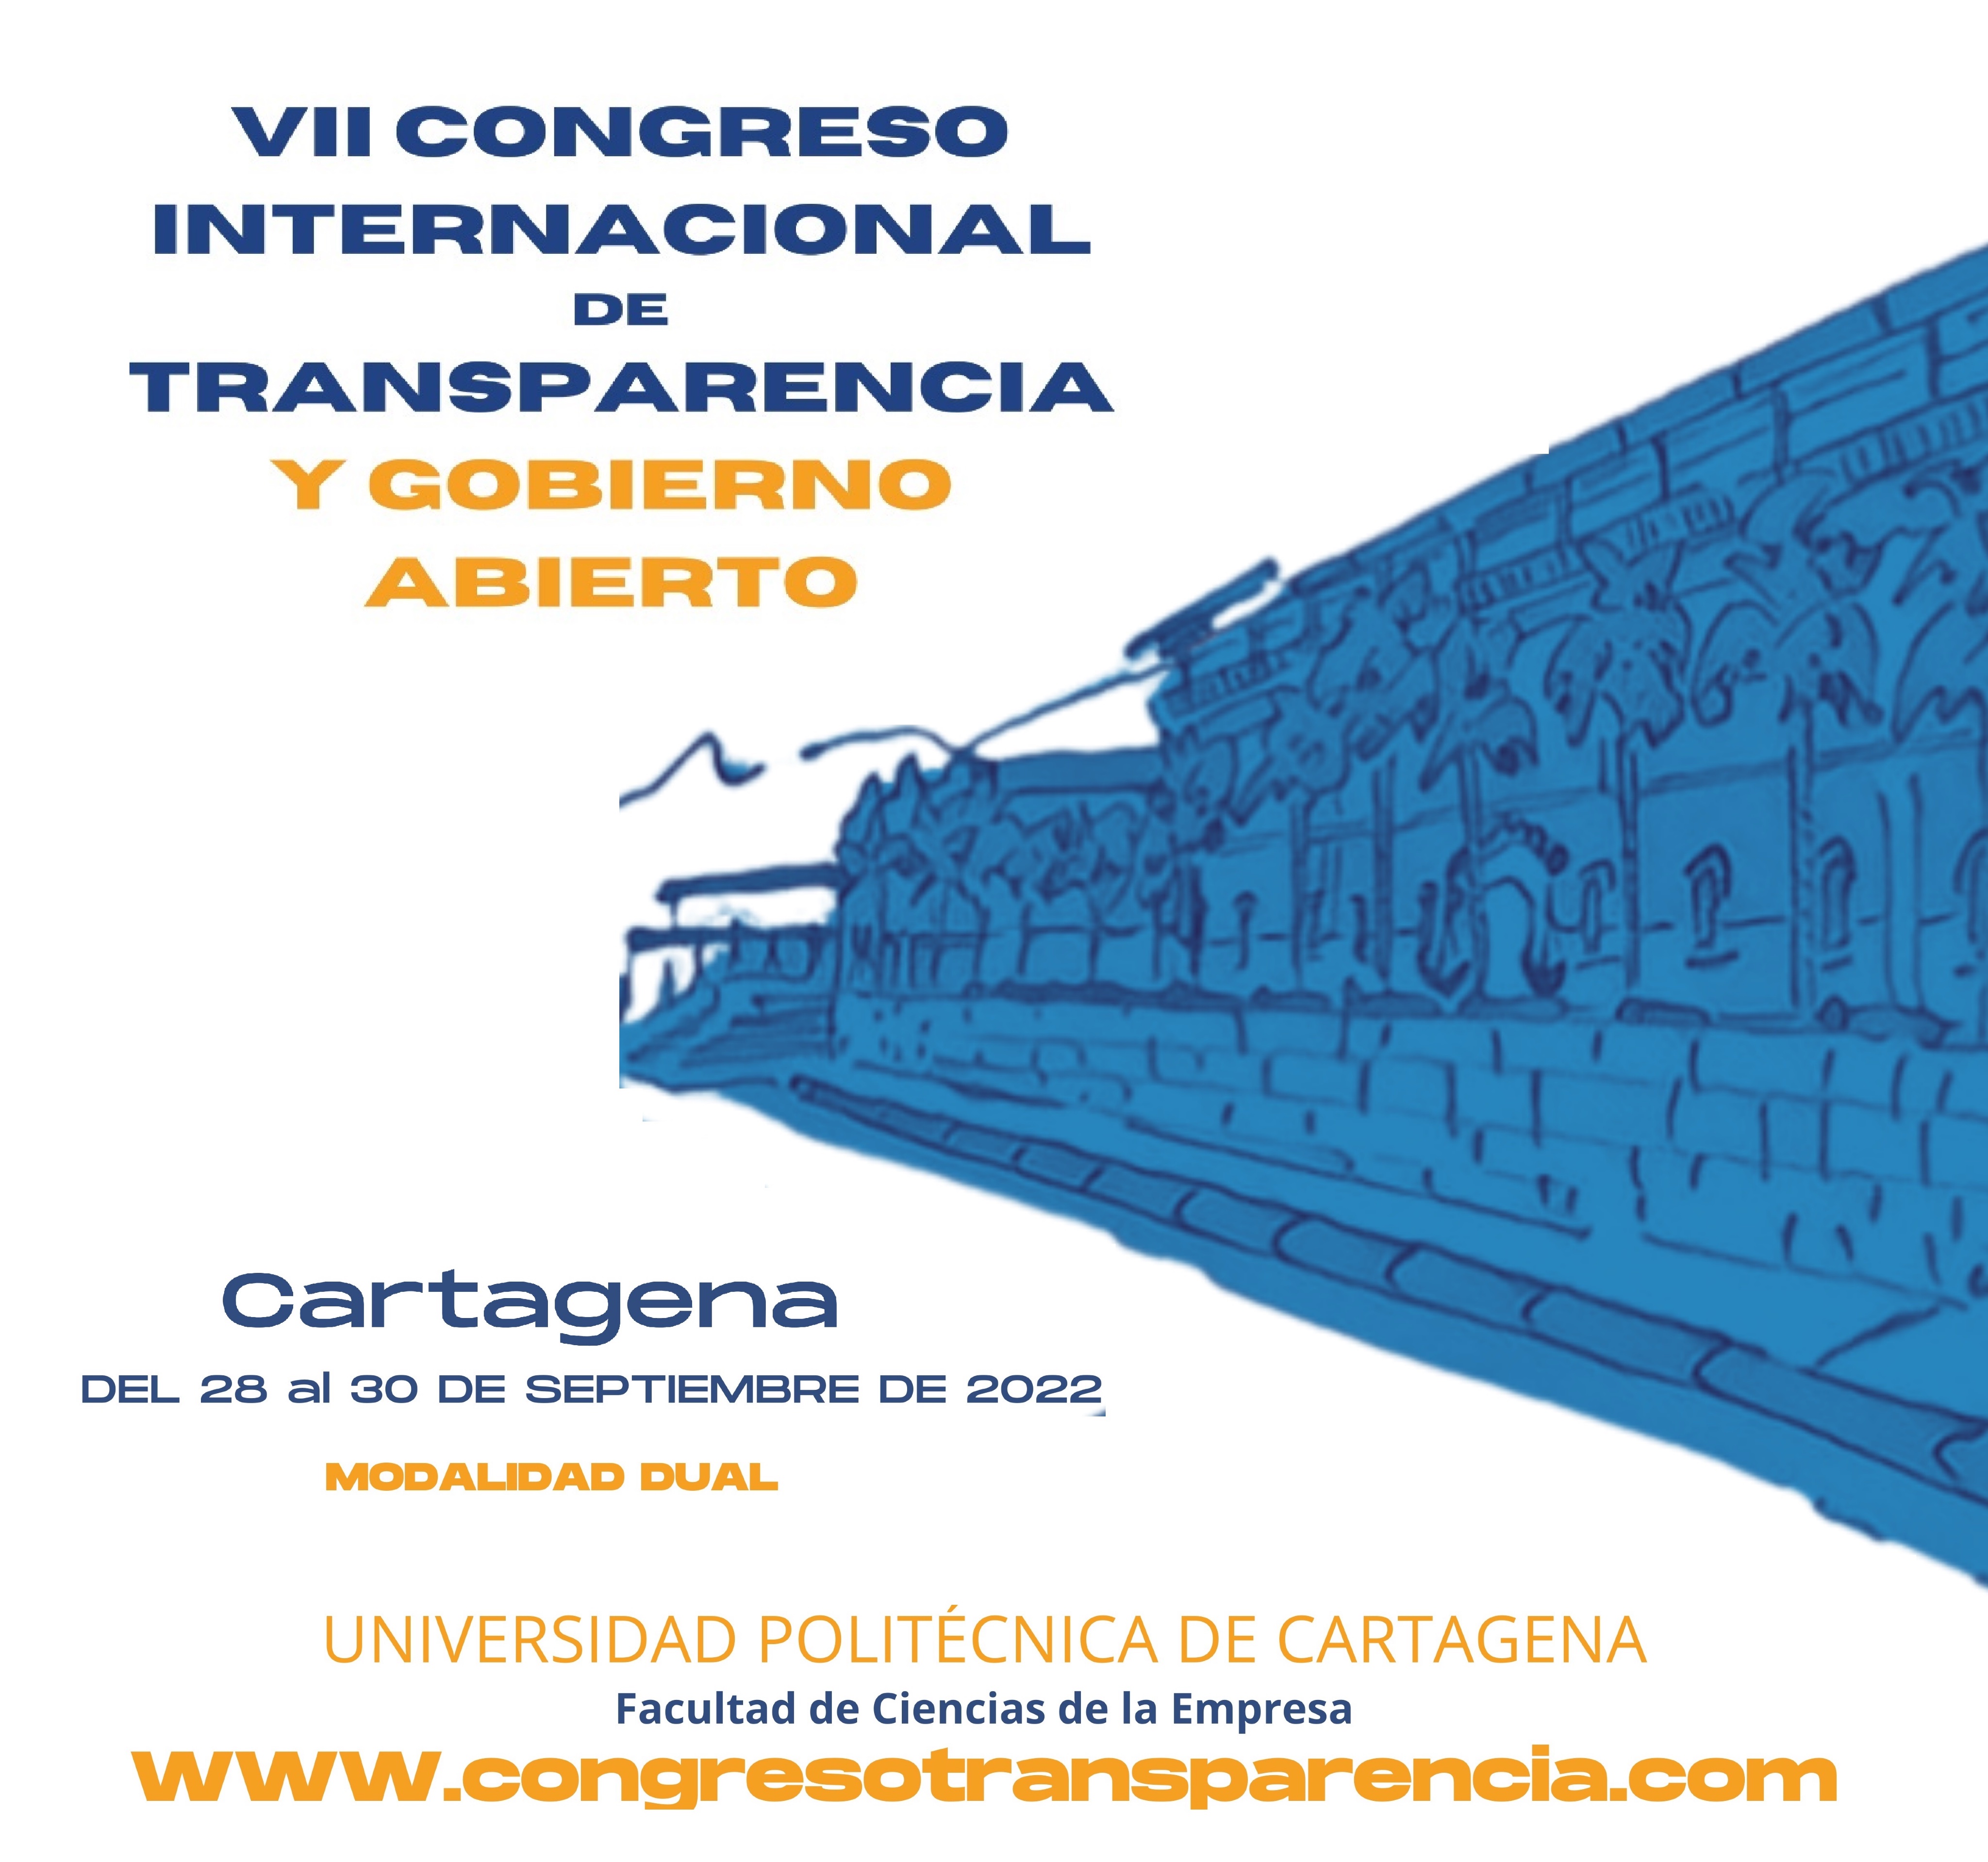 El CEPC colabora en la organización del VII Congreso Internacional de Transparencia y Gobierno Abierto (Cartagena, 28-30 de septiembre)